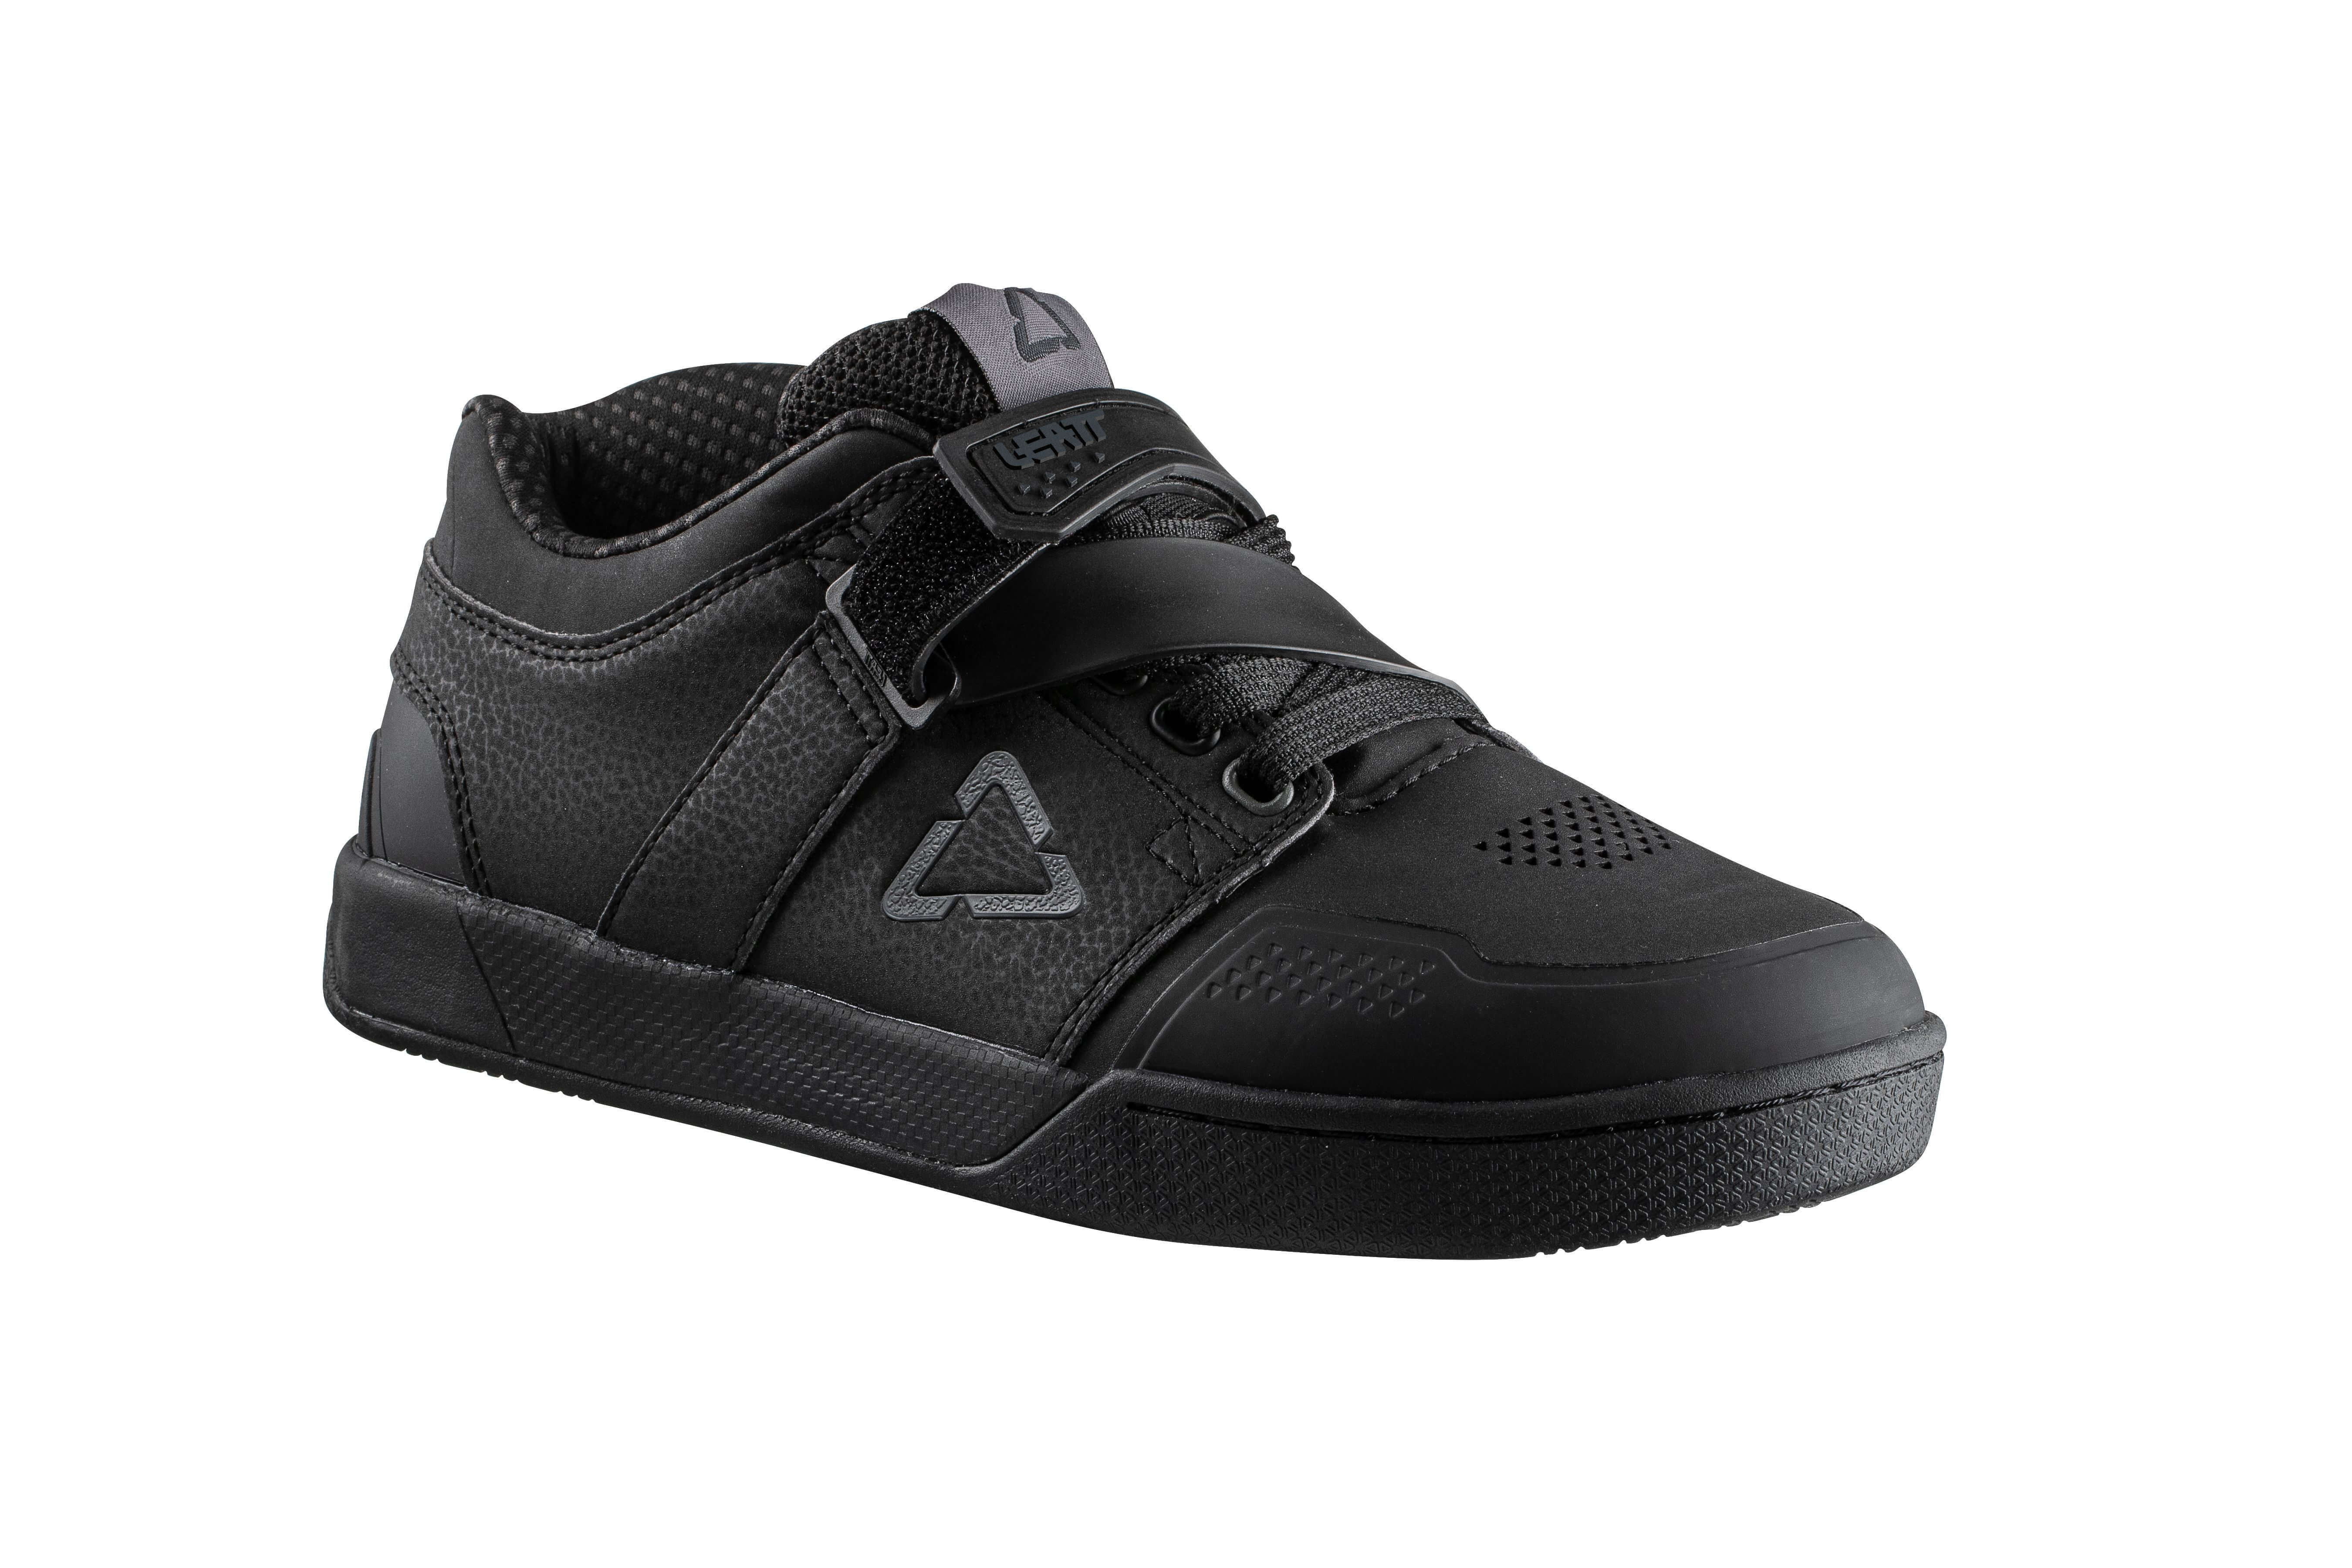 Zapatos Leatt 4.0 Clip Negro